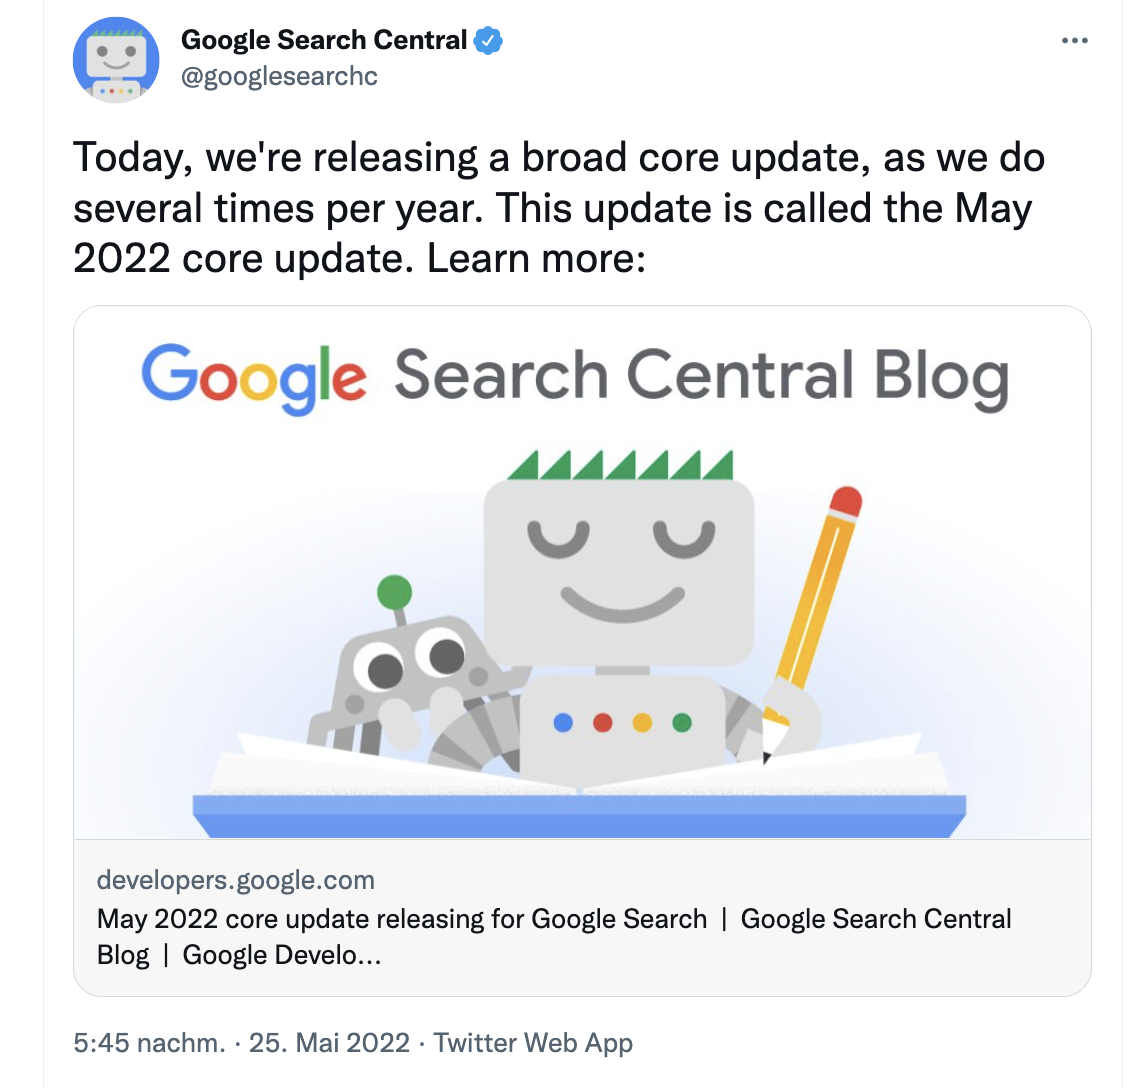 Teaserbild mit dem Google Roboter und der Ankündigung eines Google Core Updates im Mai 2022